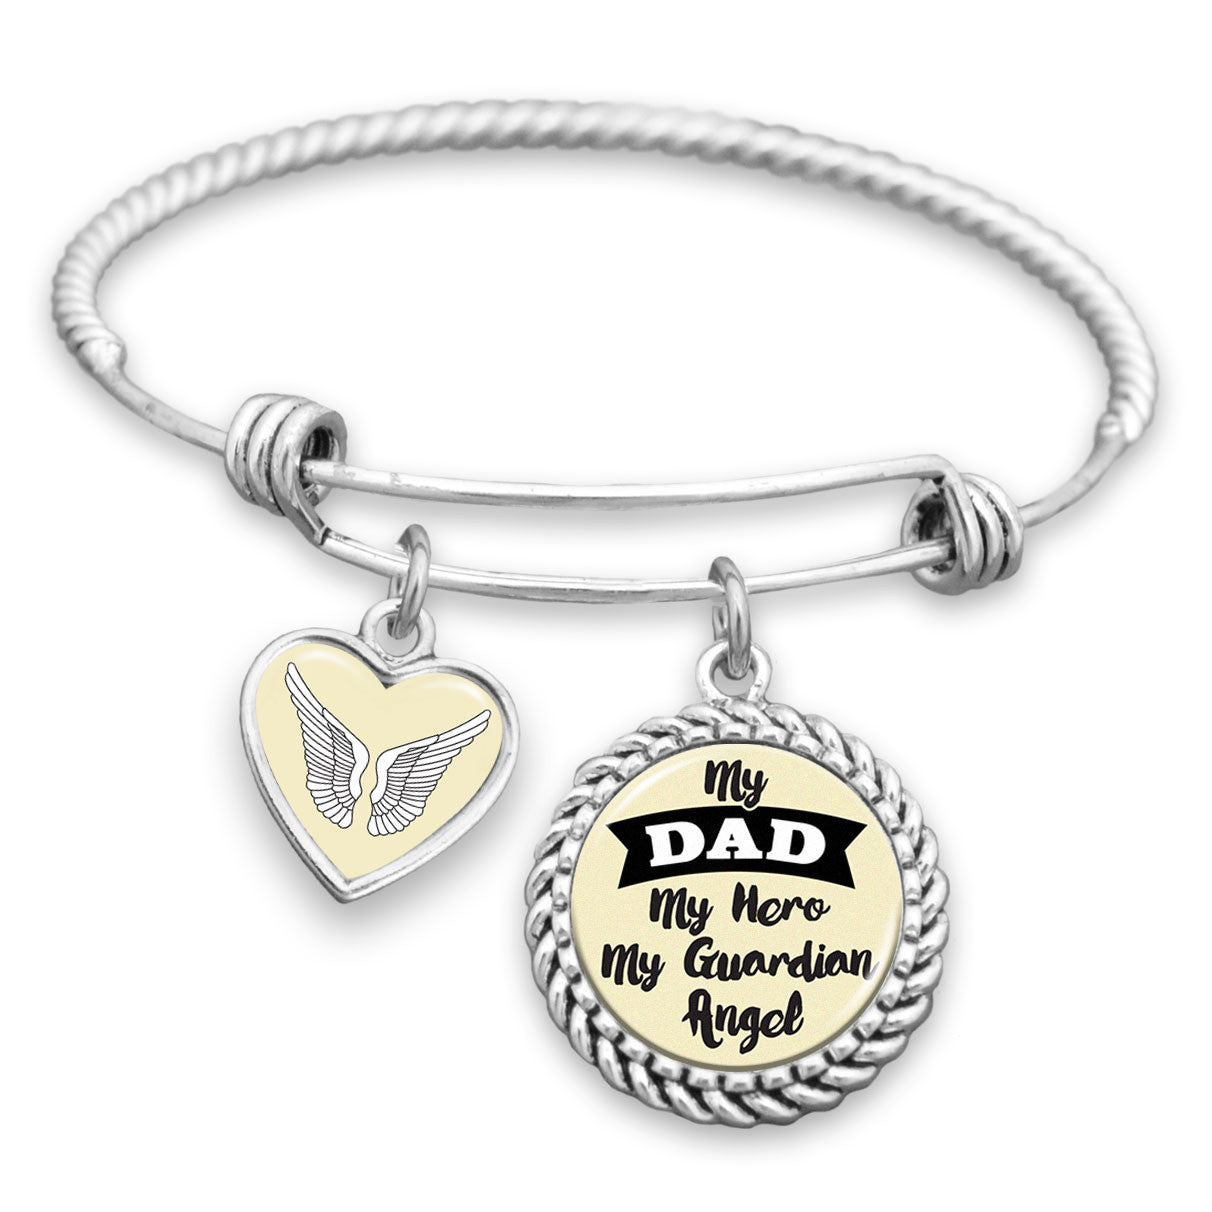 My Dad, My Hero, My Guardian Angel Charm Bracelet